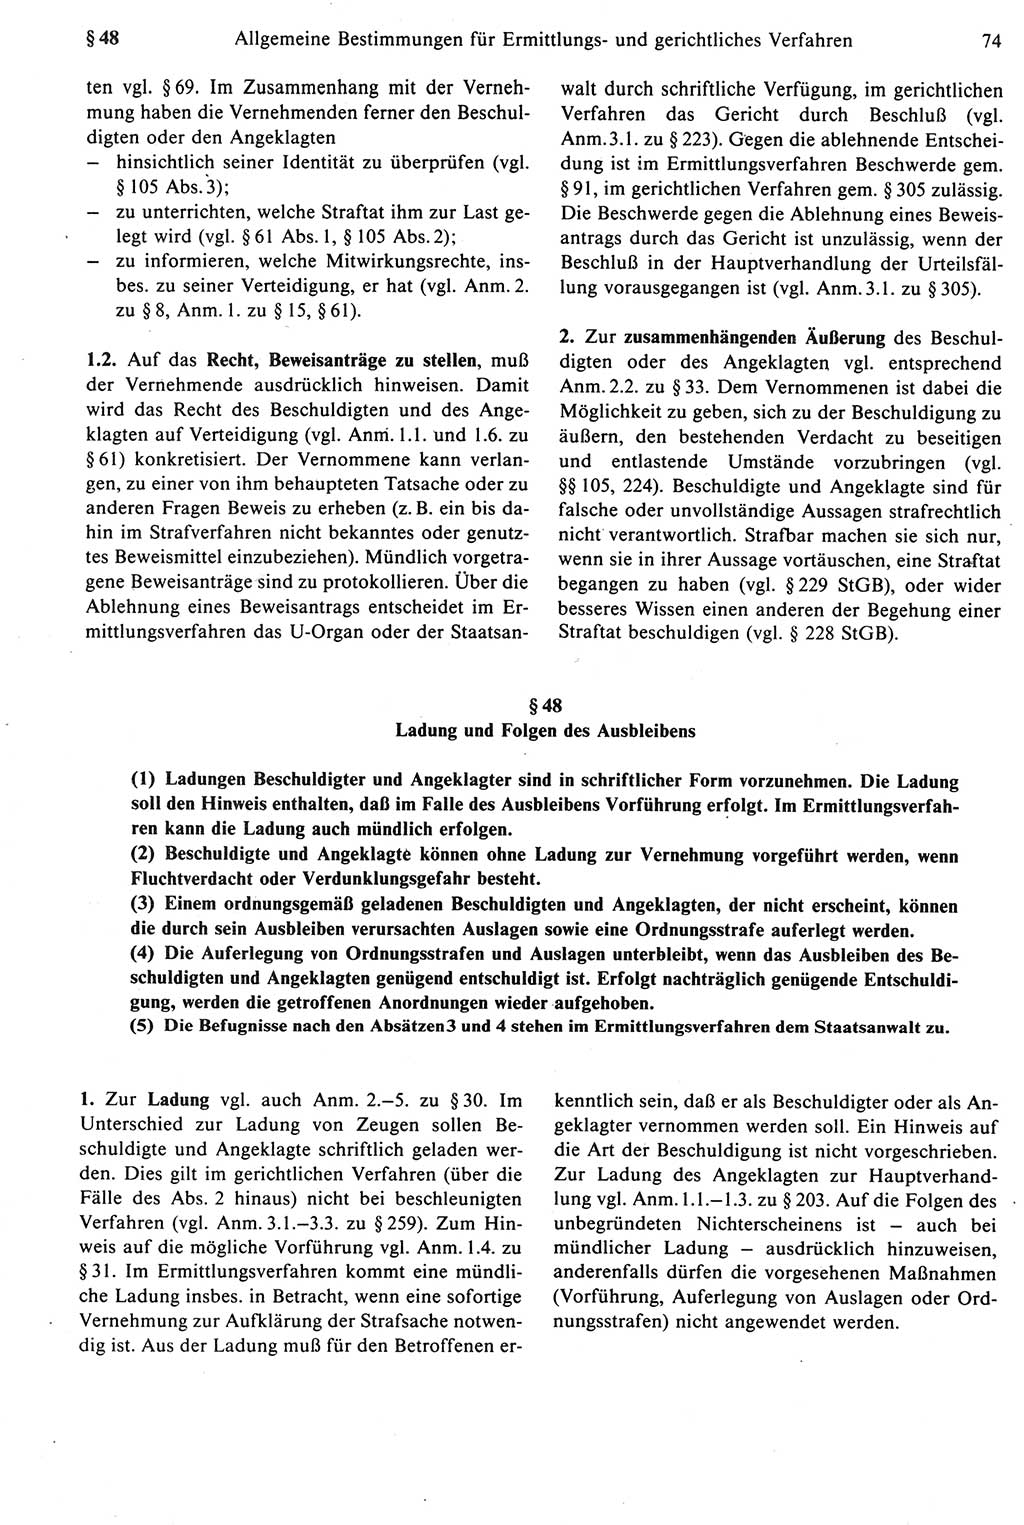 Strafprozeßrecht der DDR [Deutsche Demokratische Republik], Kommentar zur Strafprozeßordnung (StPO) 1987, Seite 74 (Strafprozeßr. DDR Komm. StPO 1987, S. 74)